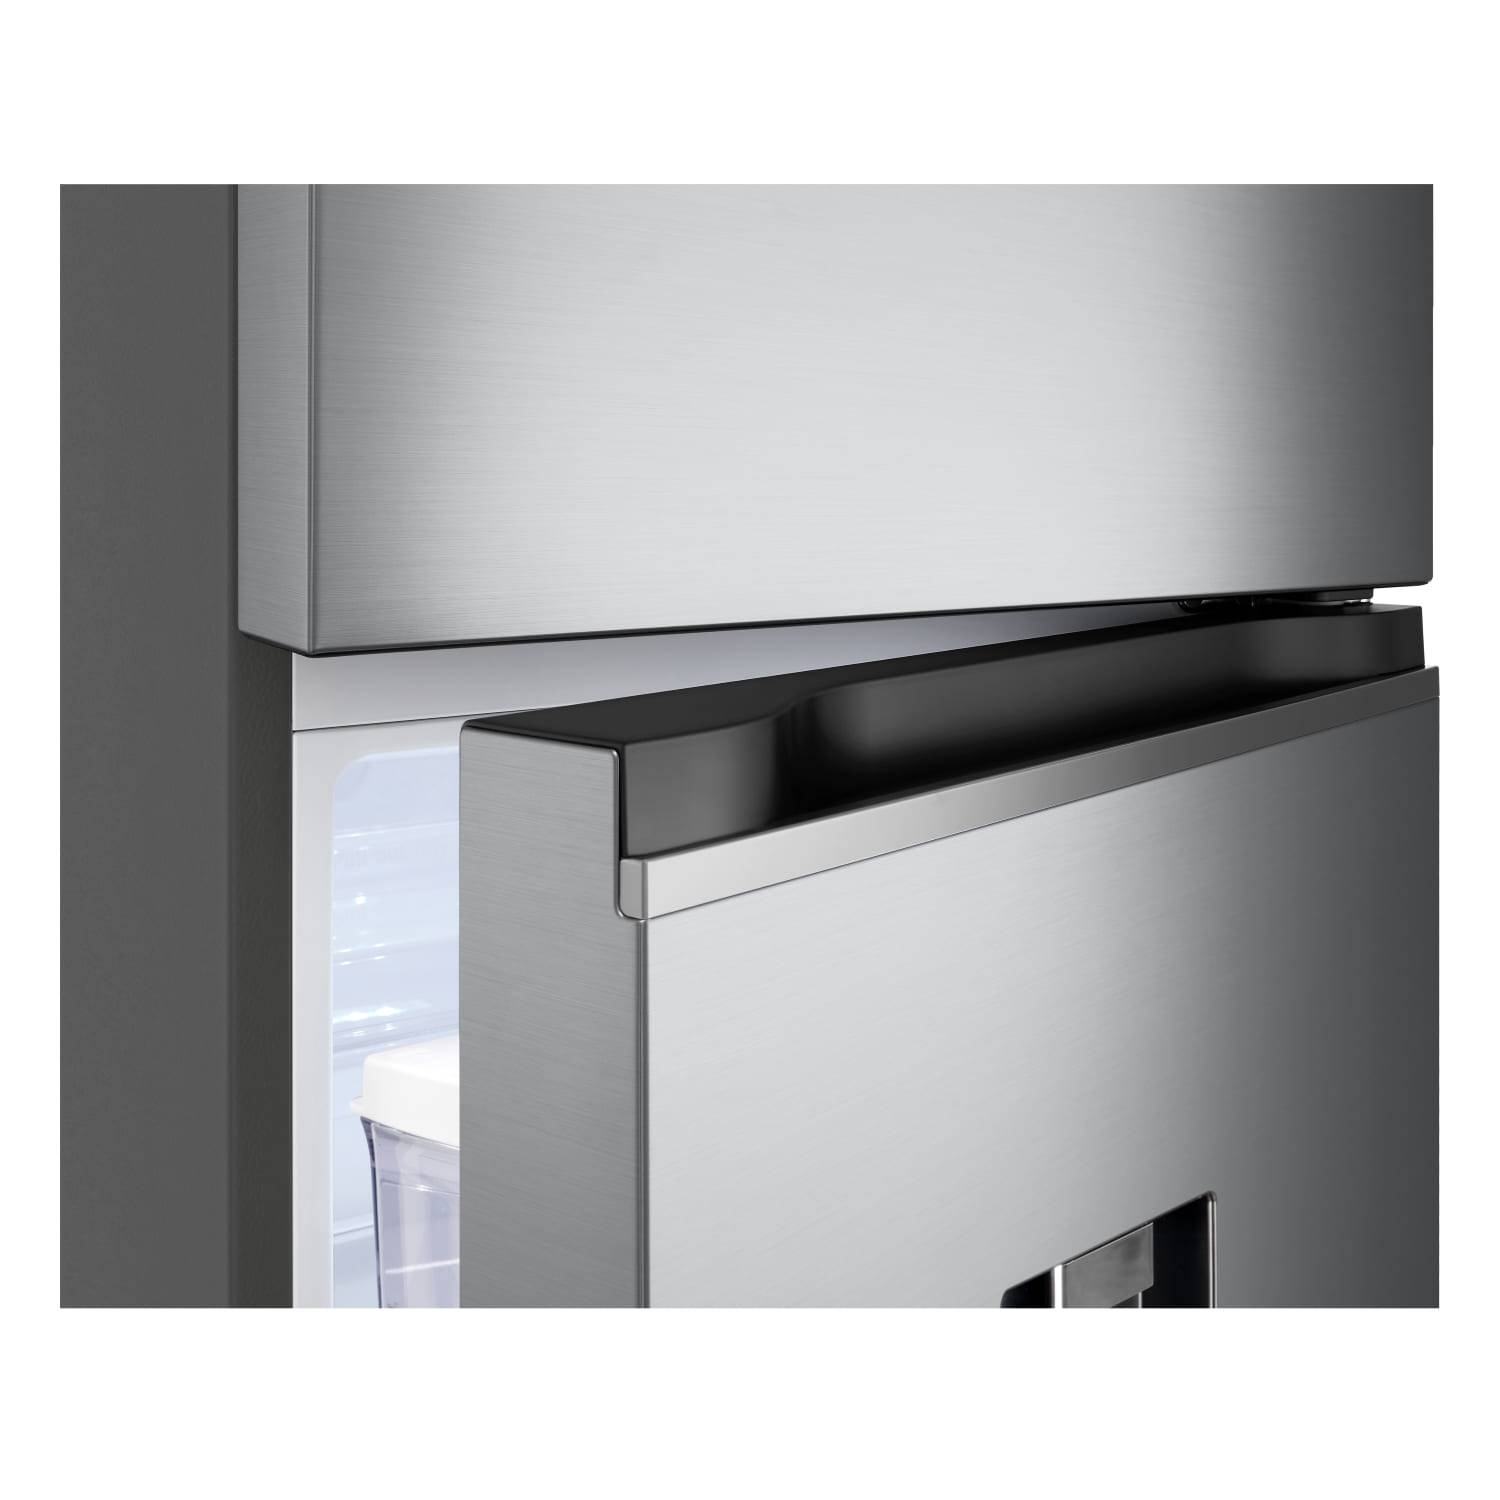 Refrigerador-Congelador Lg Vt27Wpp Inox 262 LTS [Openbox]